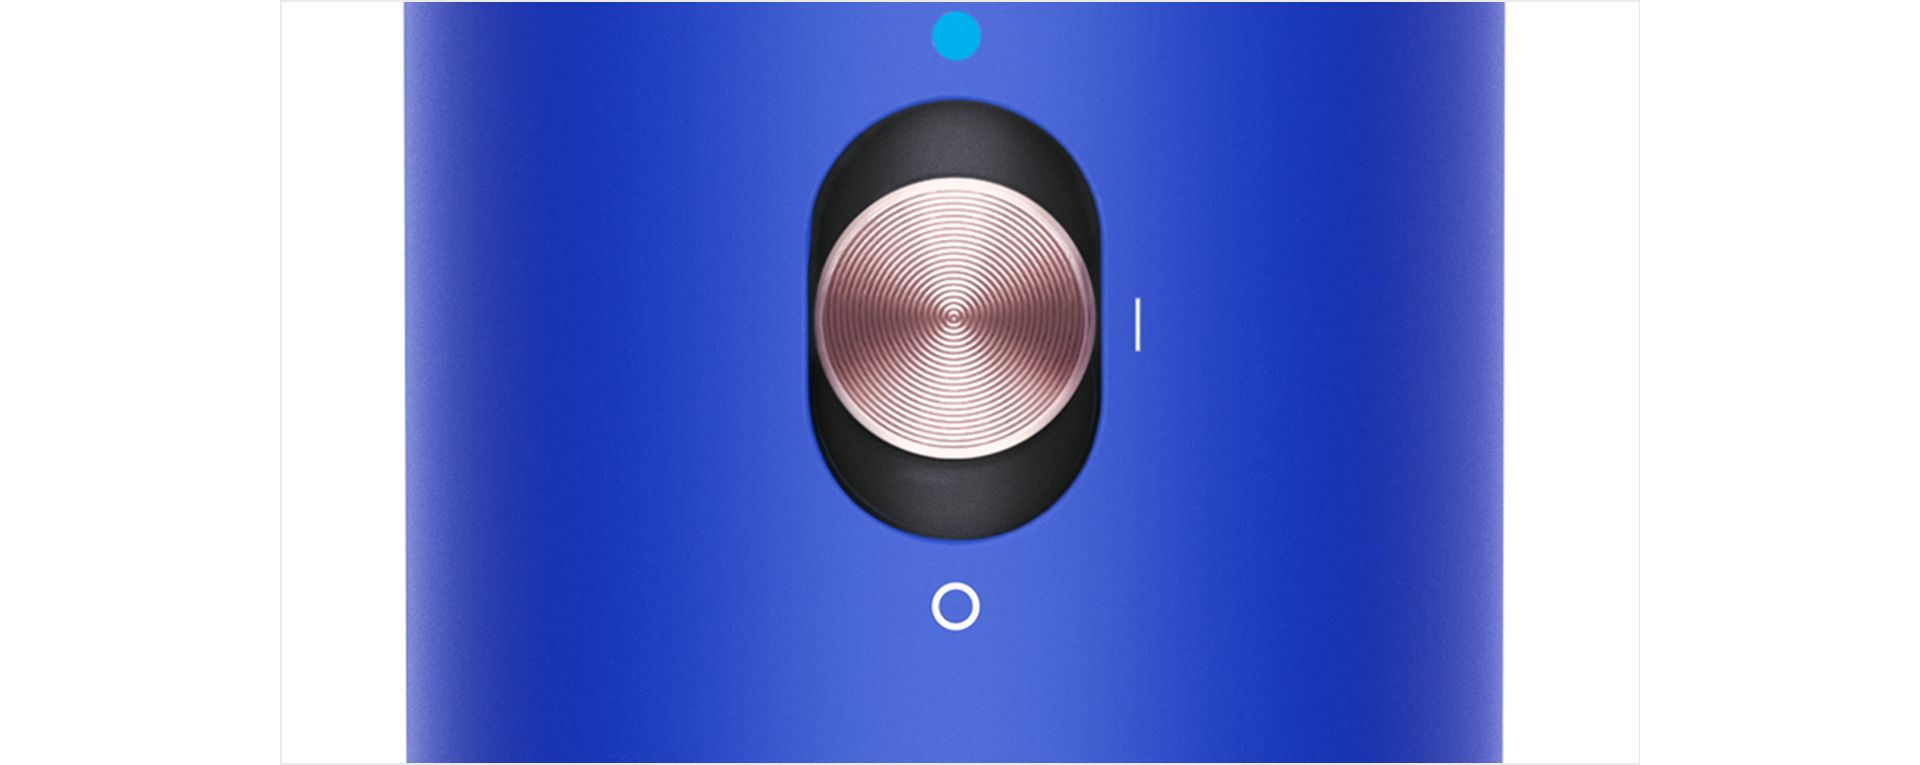 Збільшене зображення кнопки холодного повітря на Dyson Airwrap